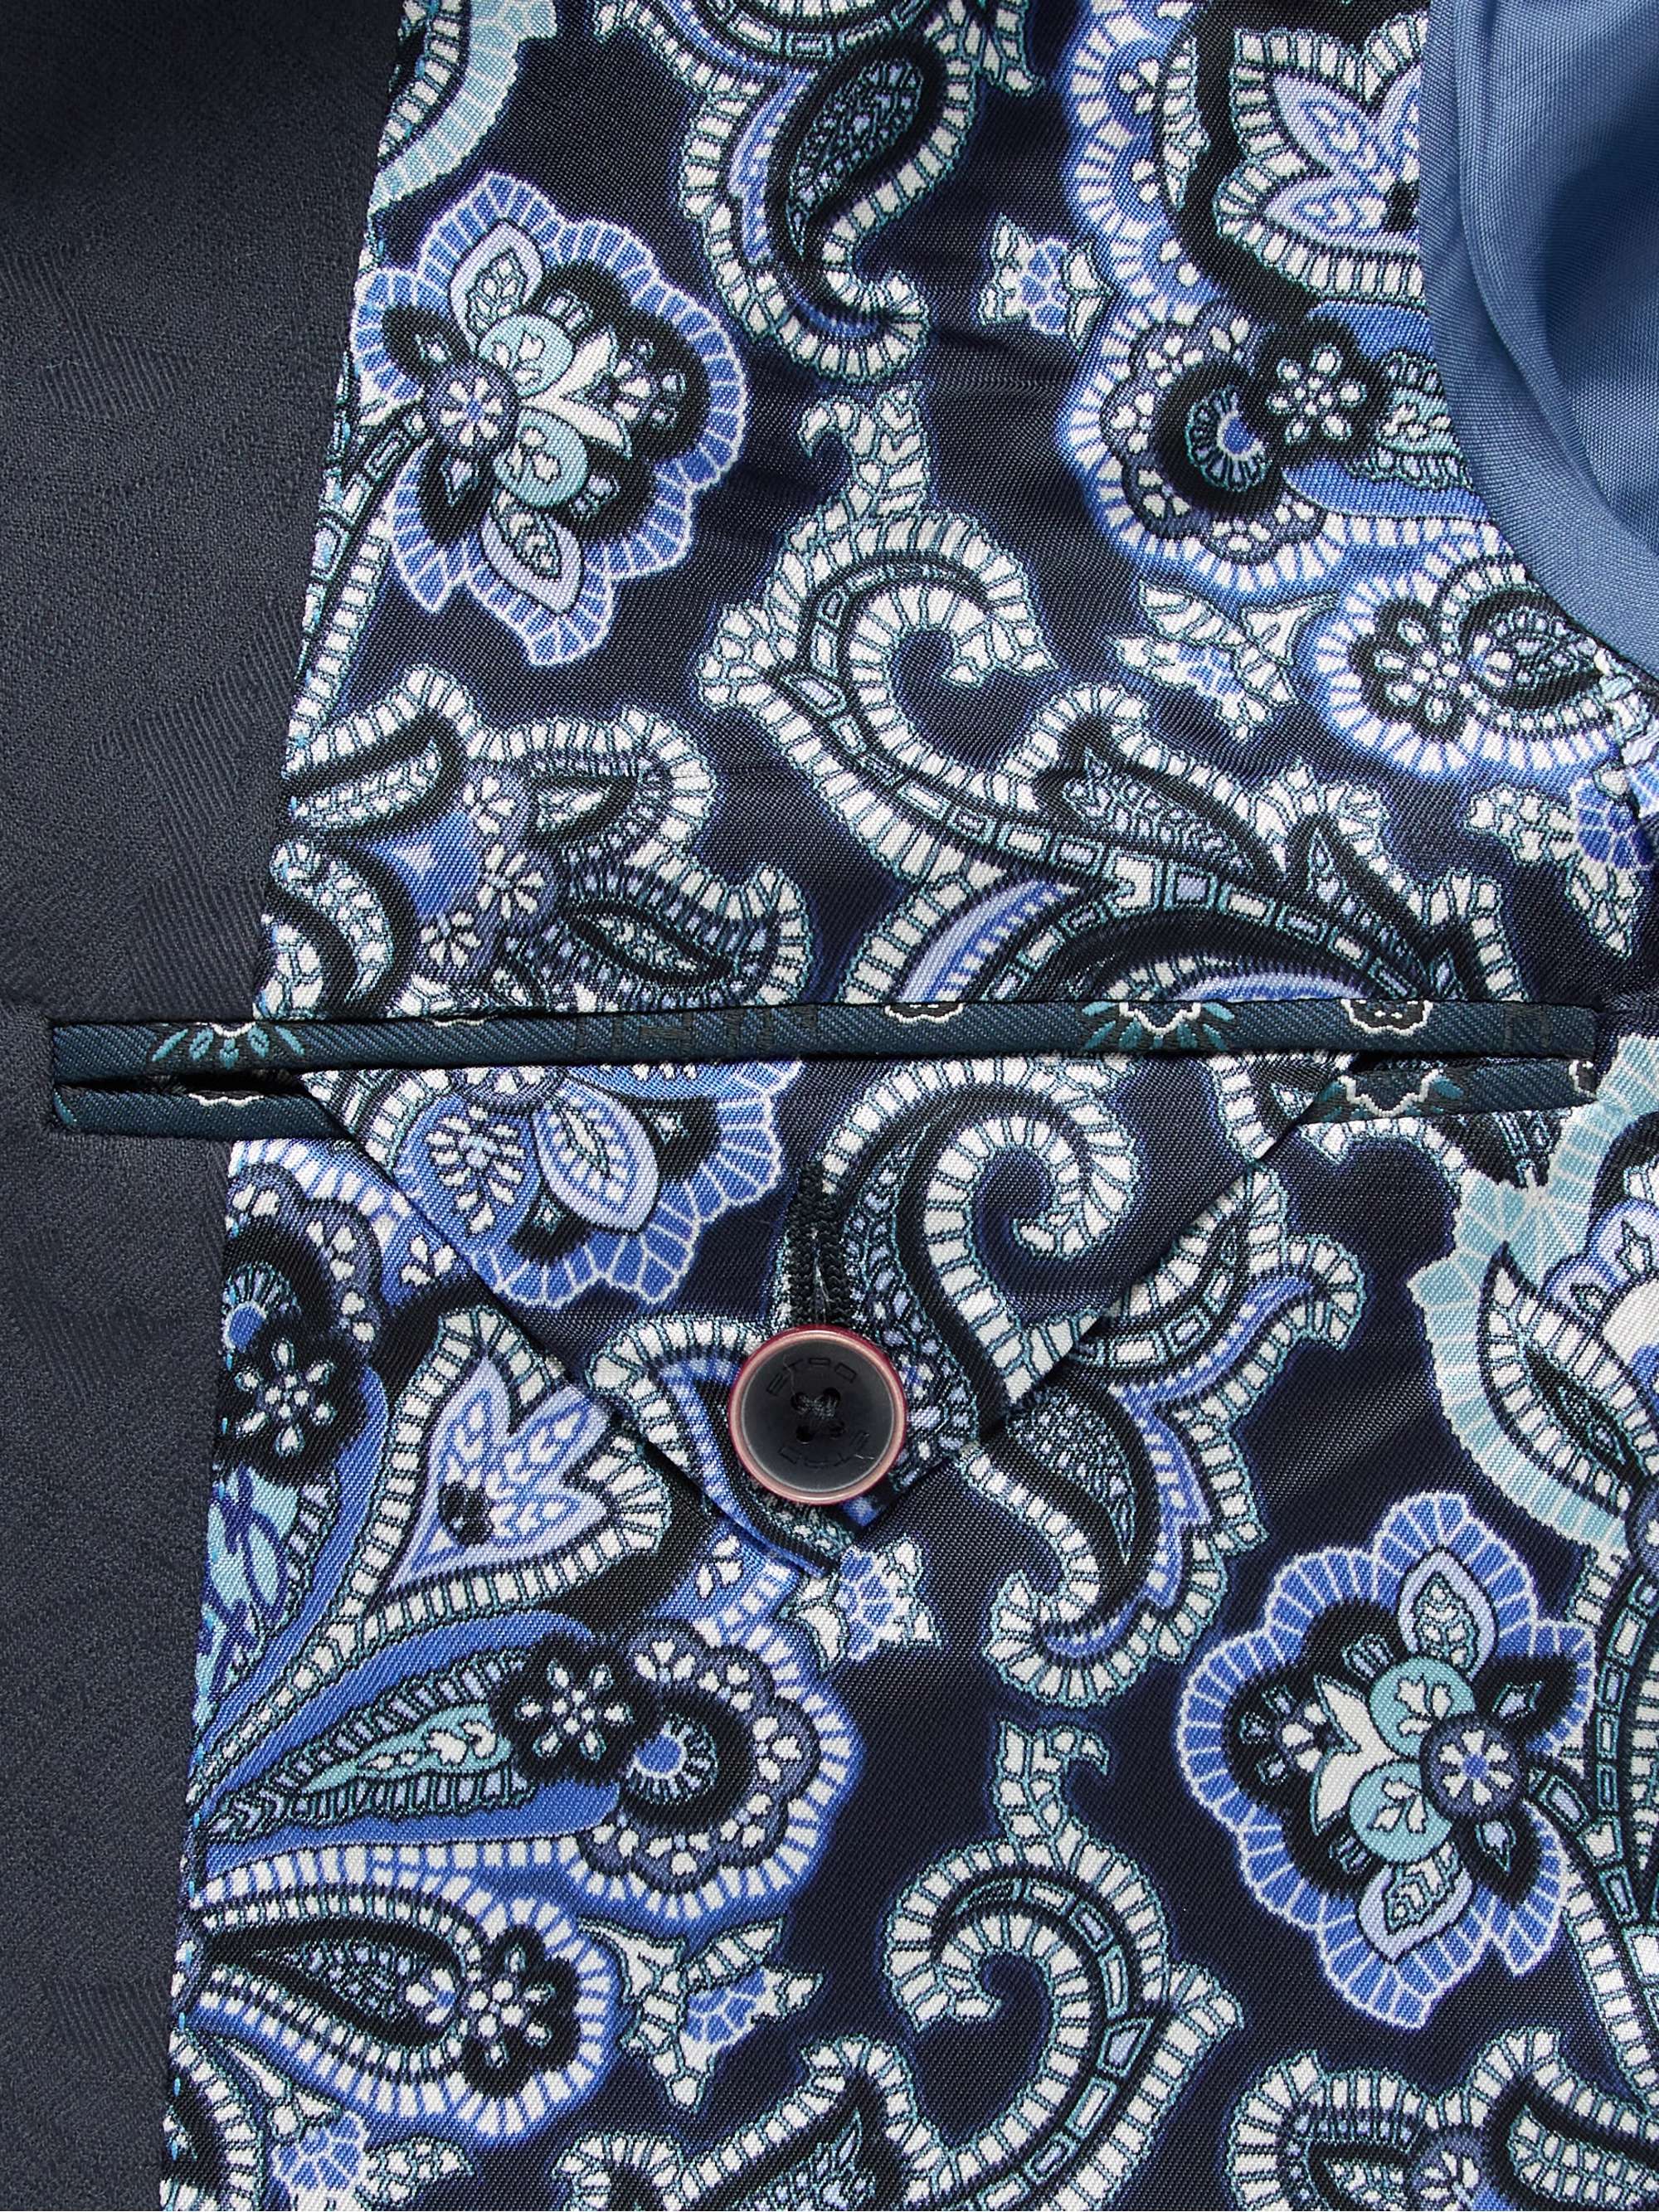 ETRO Slim-Fit Cotton-Blend Jacquard Suit Jacket